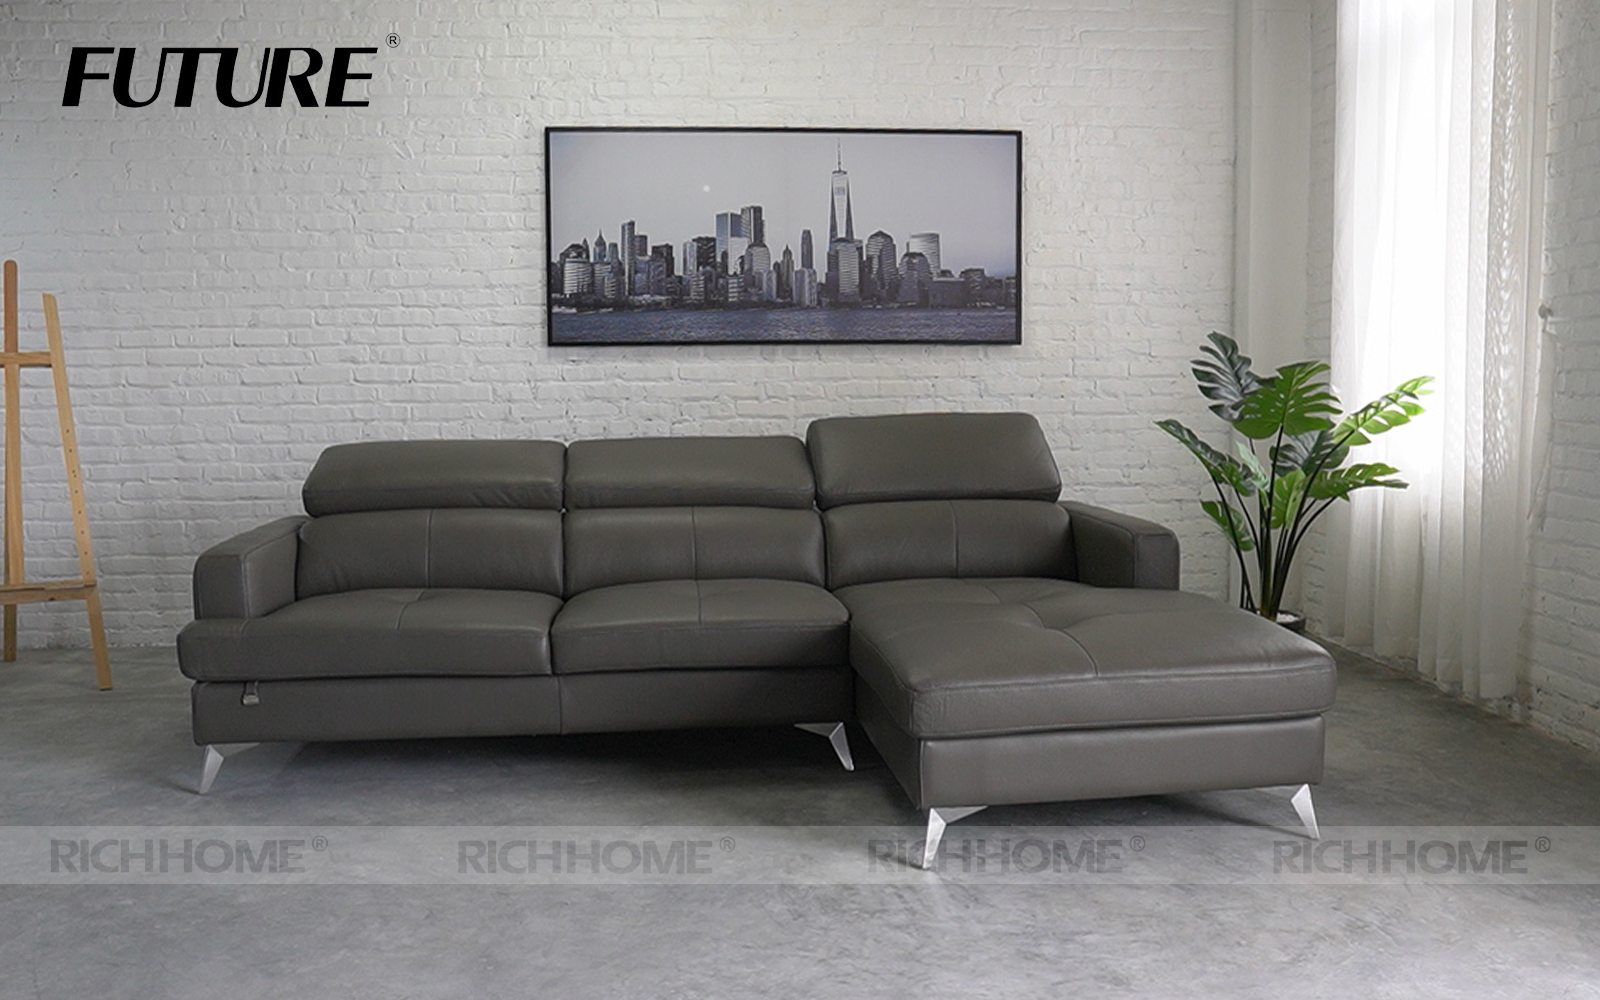 Top 10 mẫu ghế sofa màu xám lông chuột cho phòng khách hiện đại - Ảnh 3